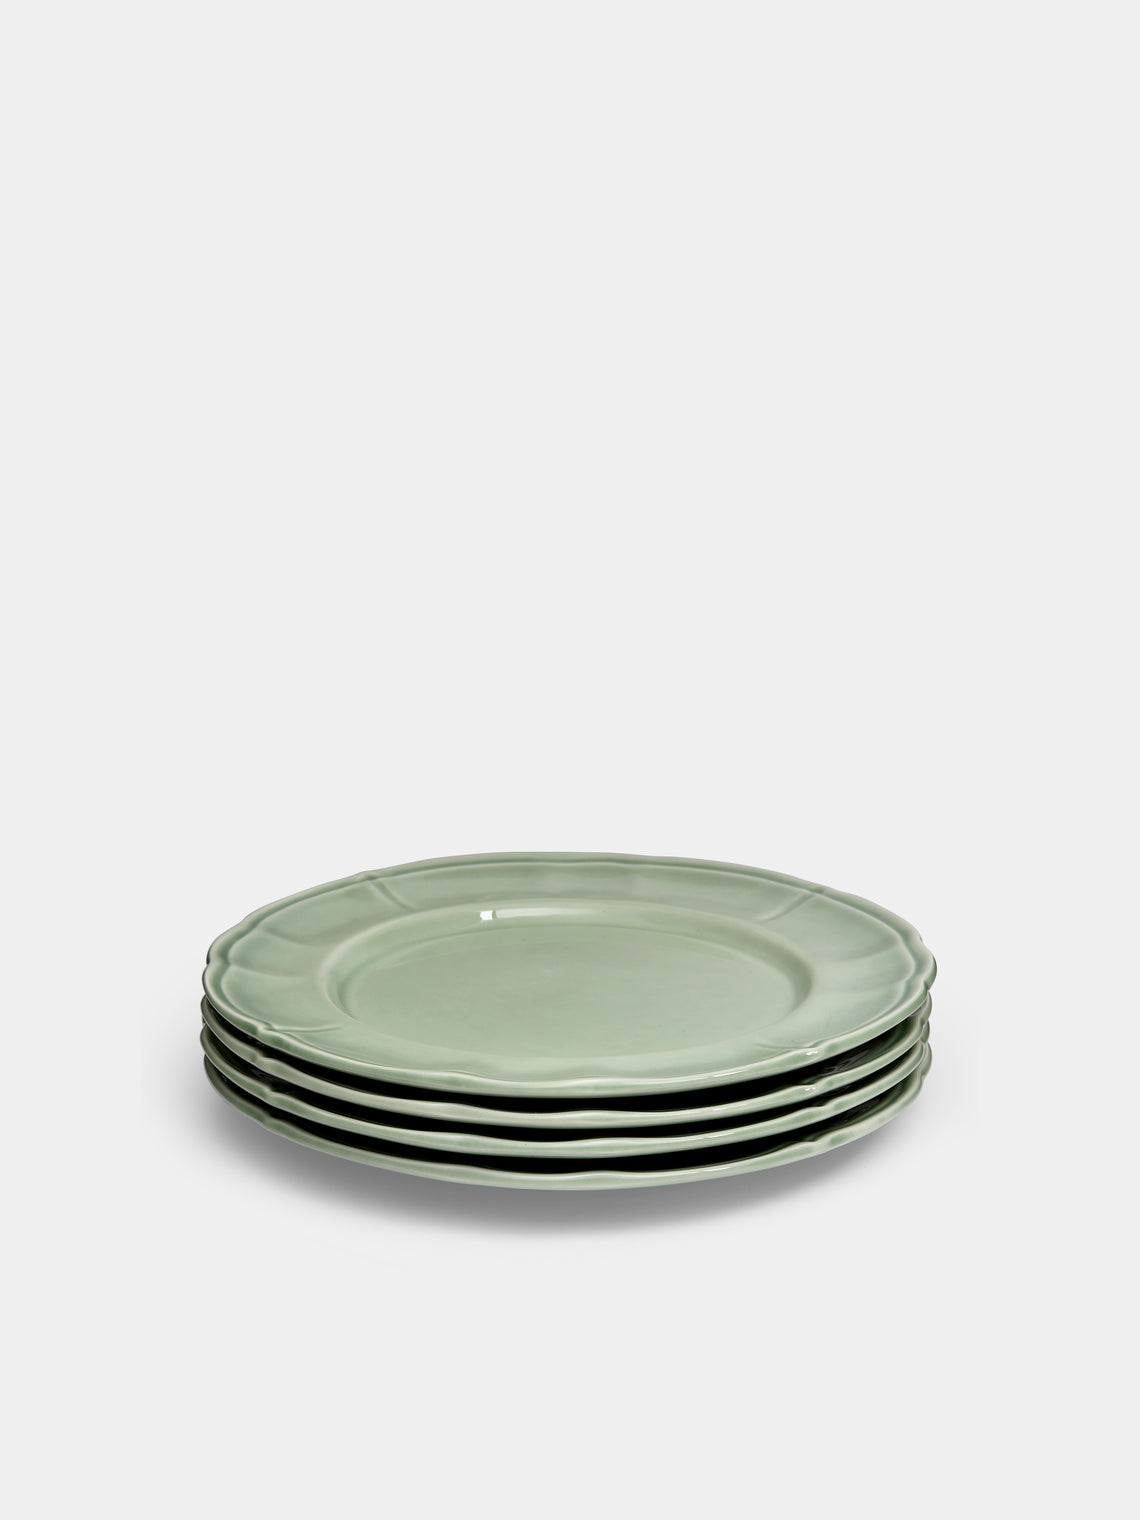 Laboratorio Paravicini - Milano Ceramic Dessert Plates (Set of 4) -  - ABASK